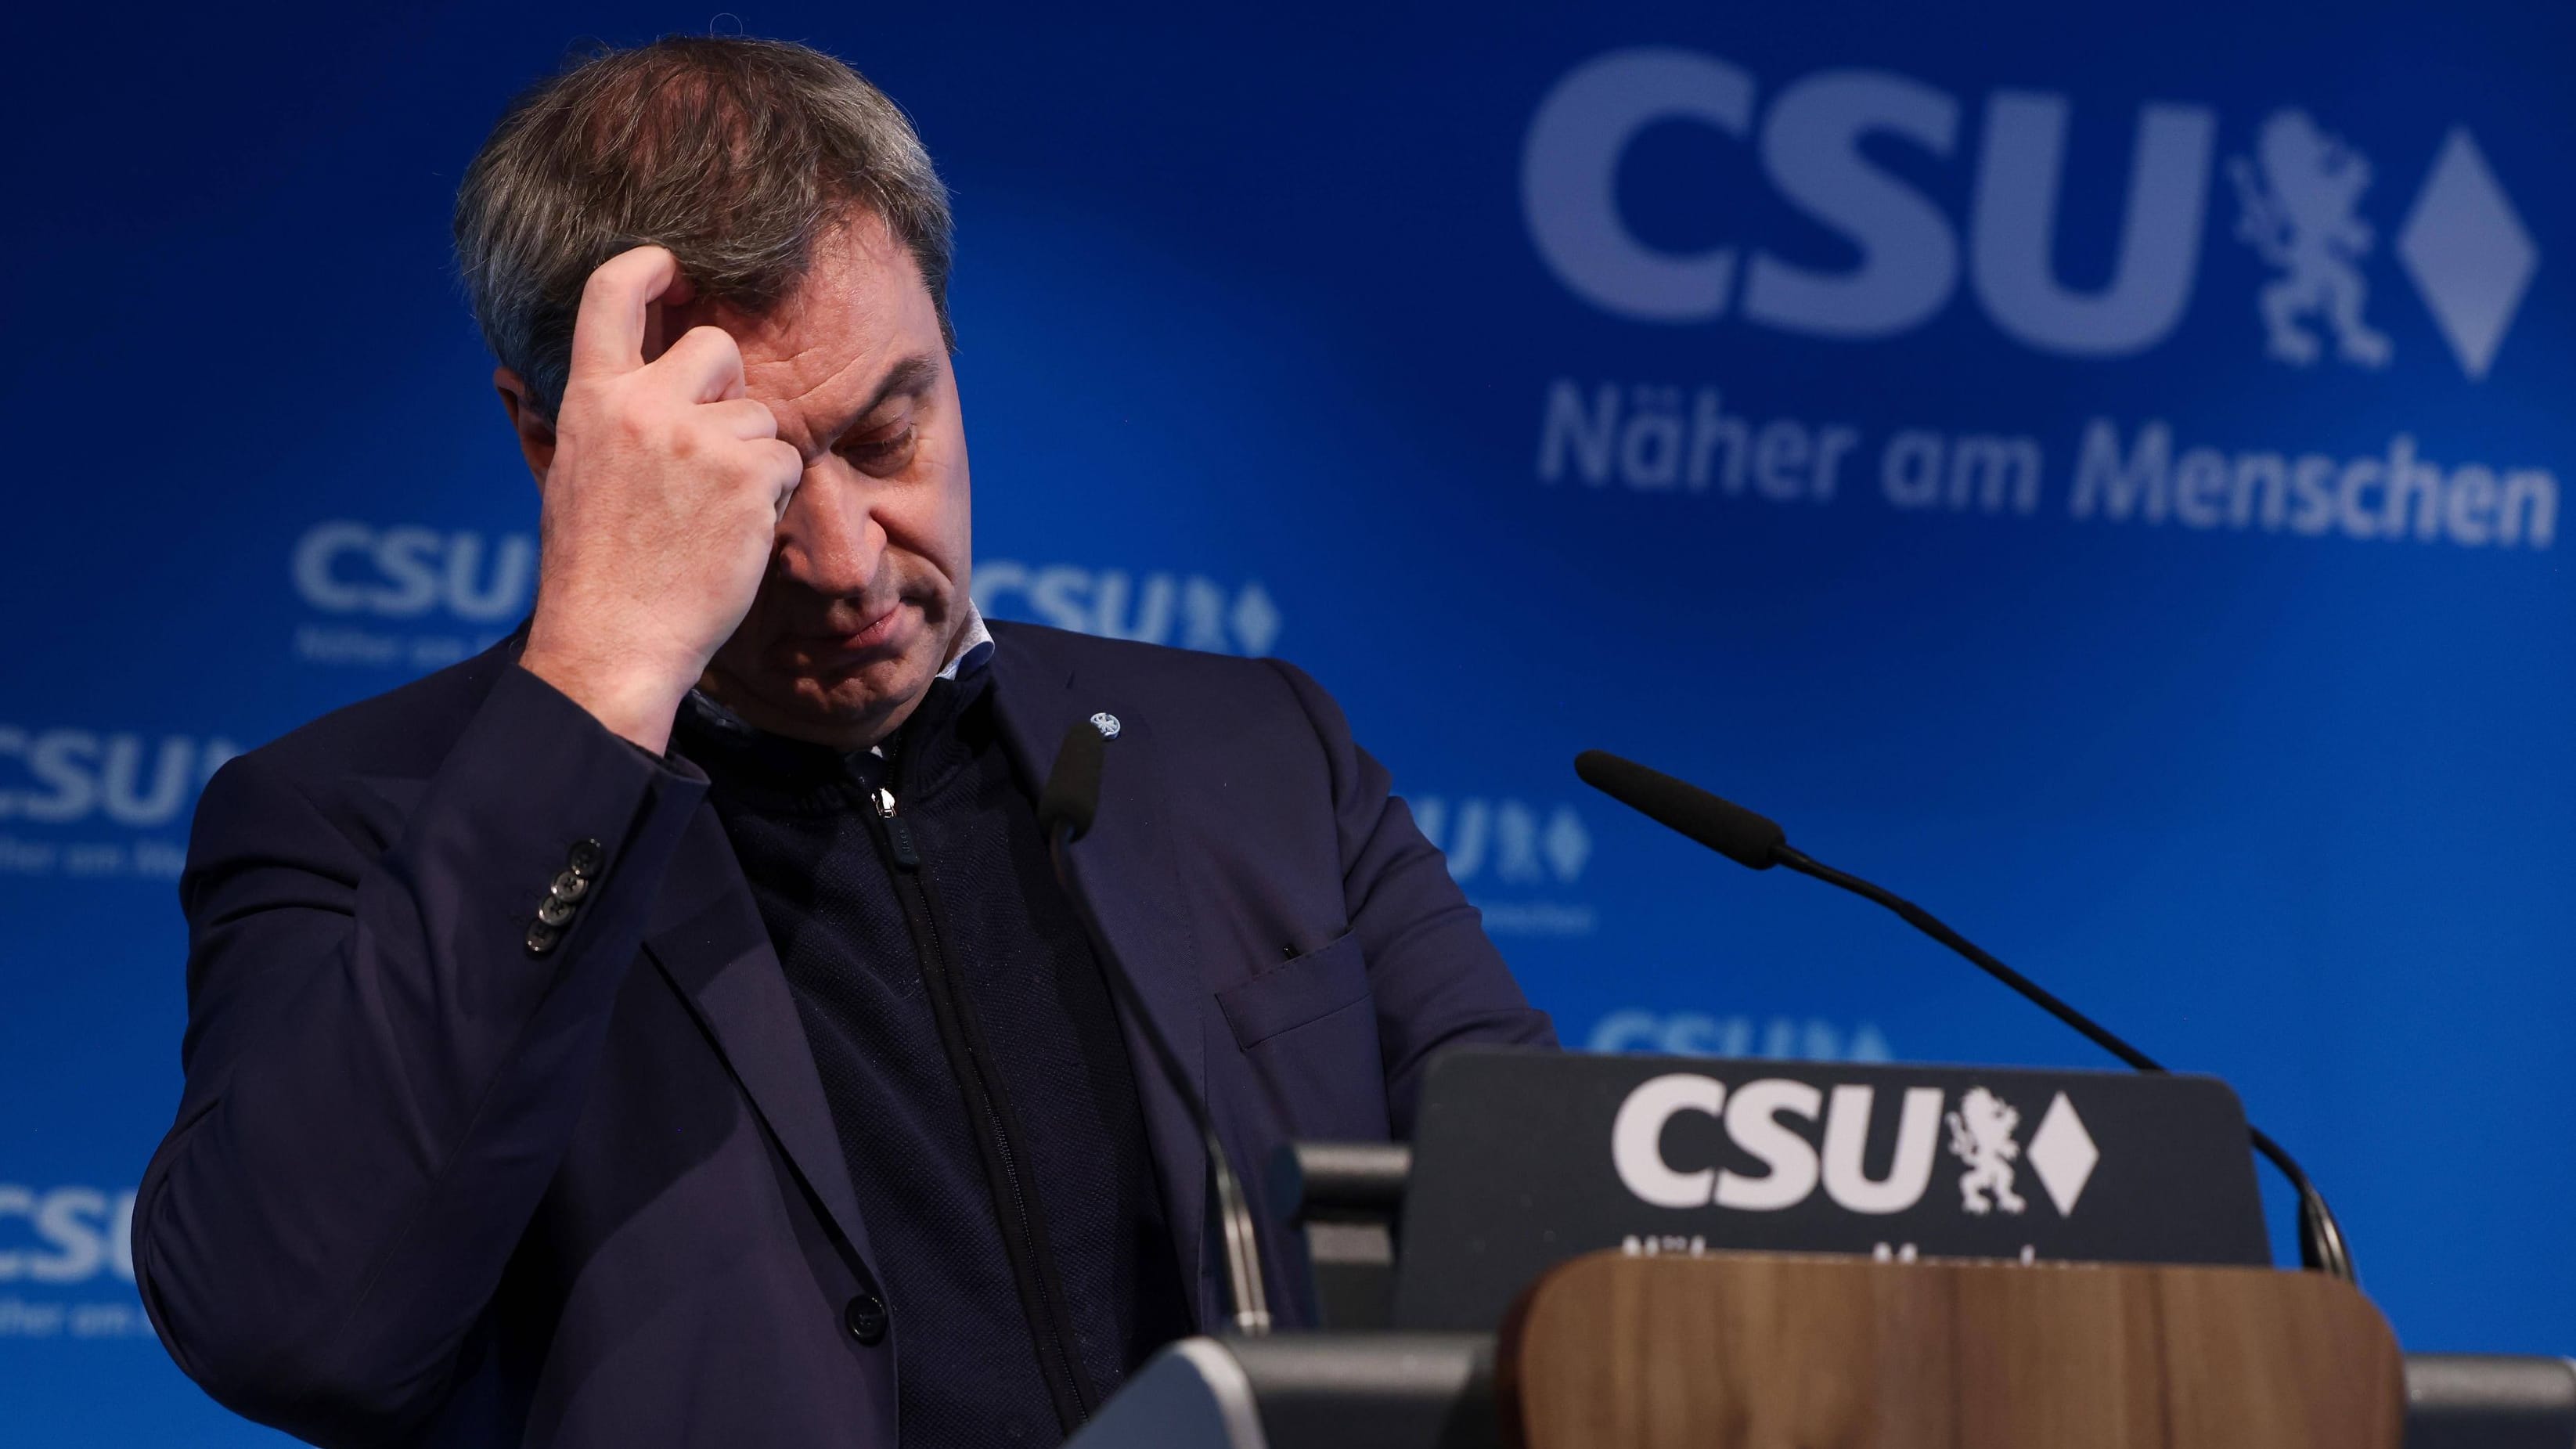 CSU: Söders Partei „rechtsextrem“? Suchmaschine sorgt für Verwirrung